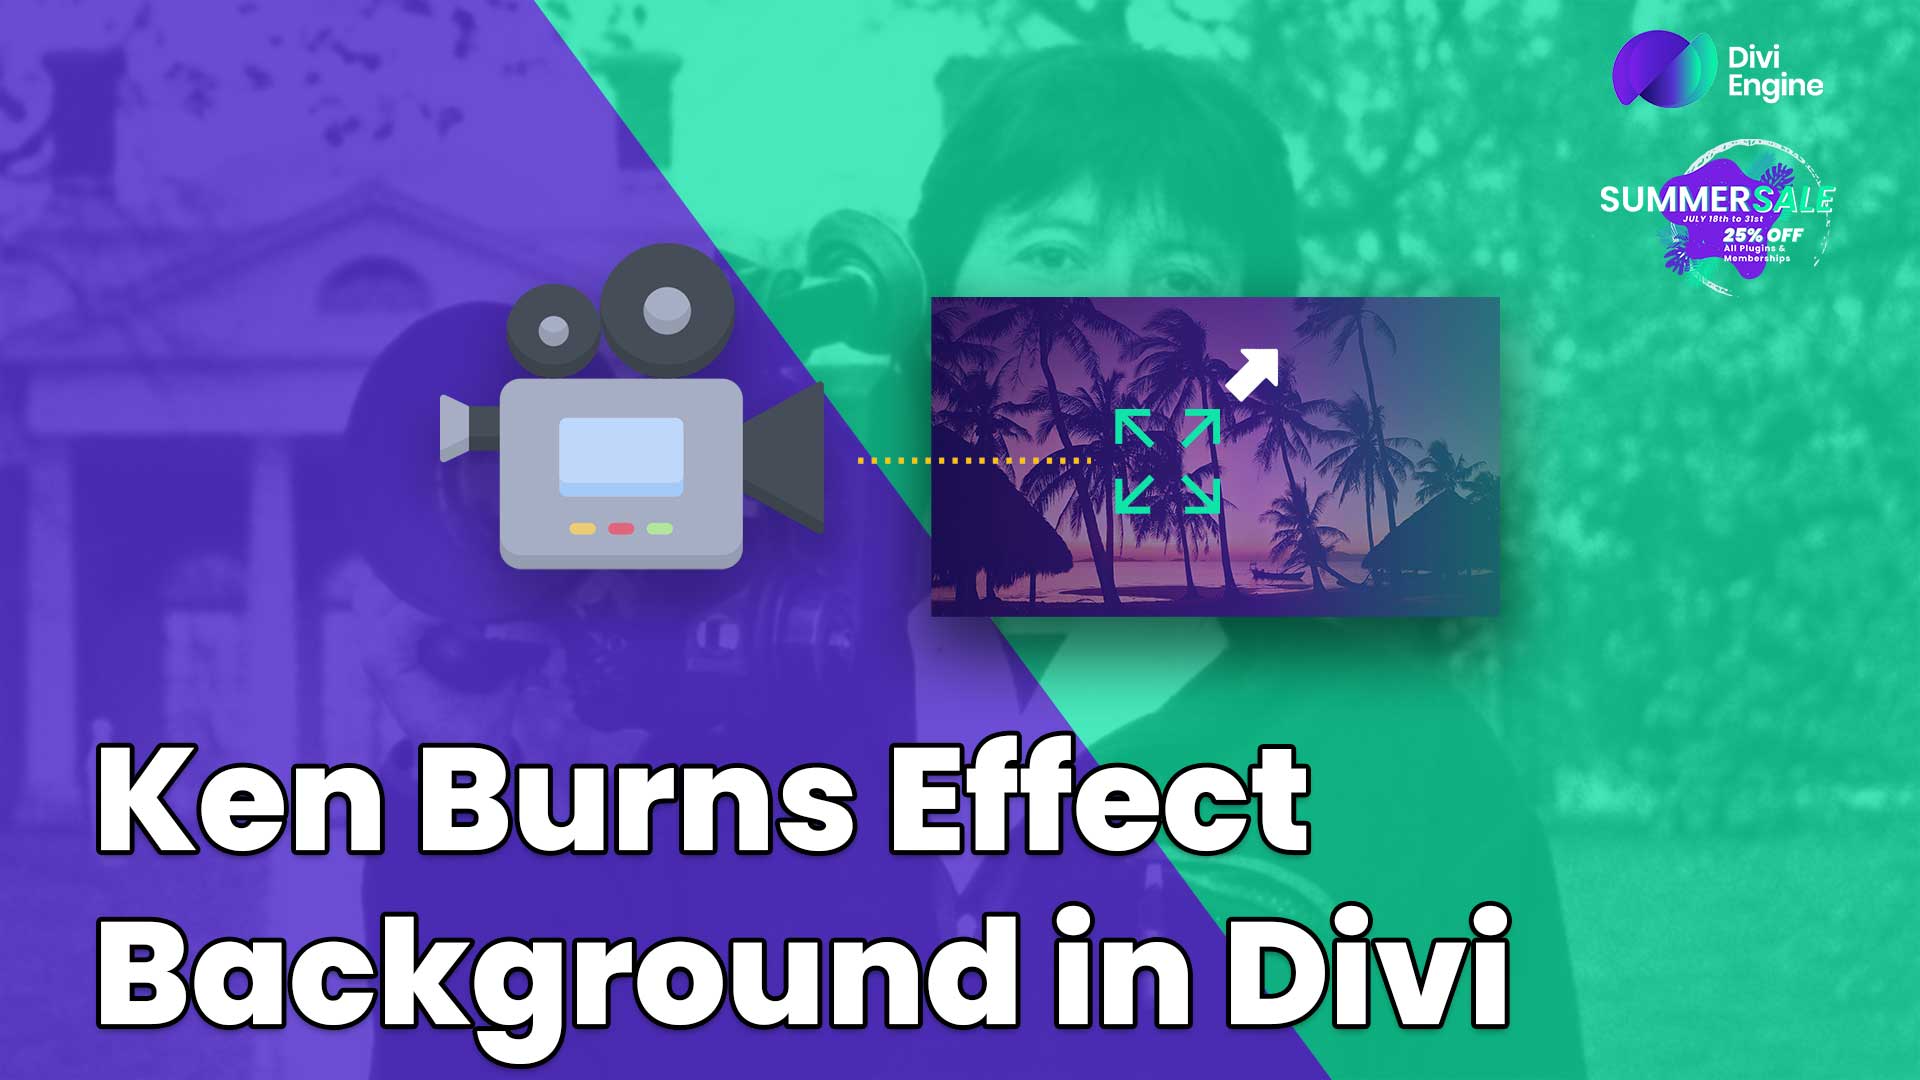 Ken Burns Effect in Divi Featured Image